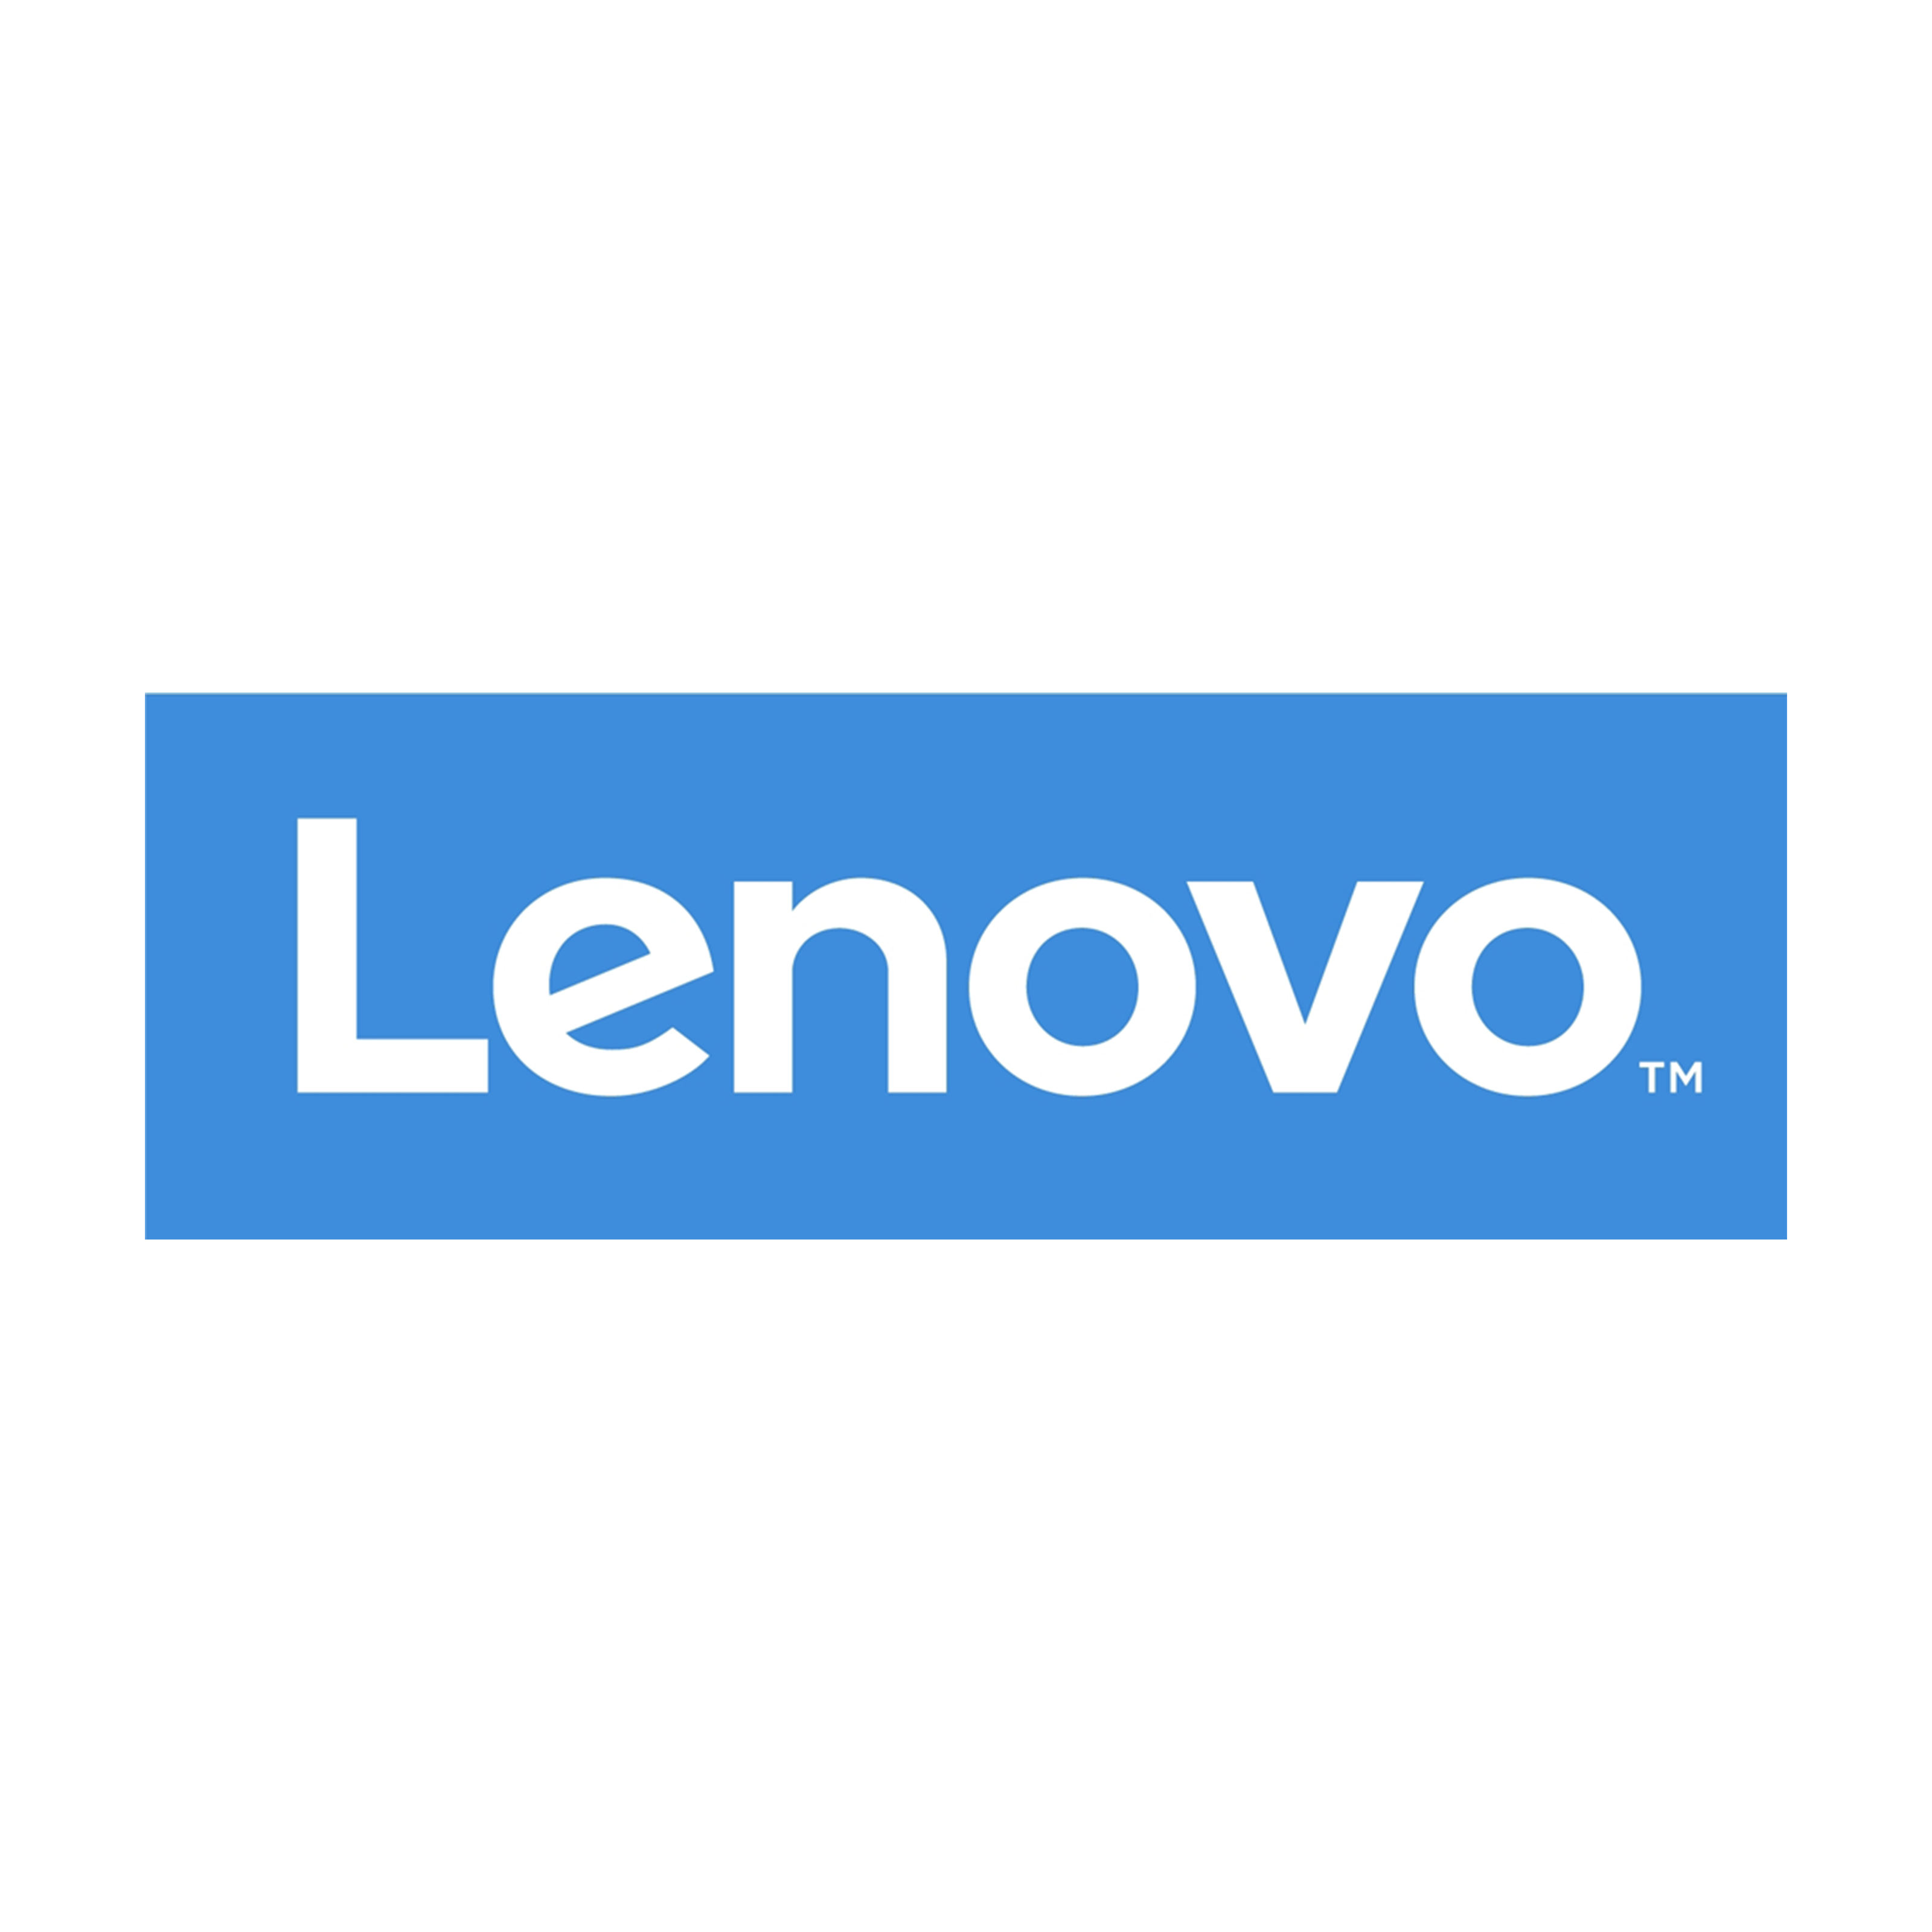 Lenovo PNG File